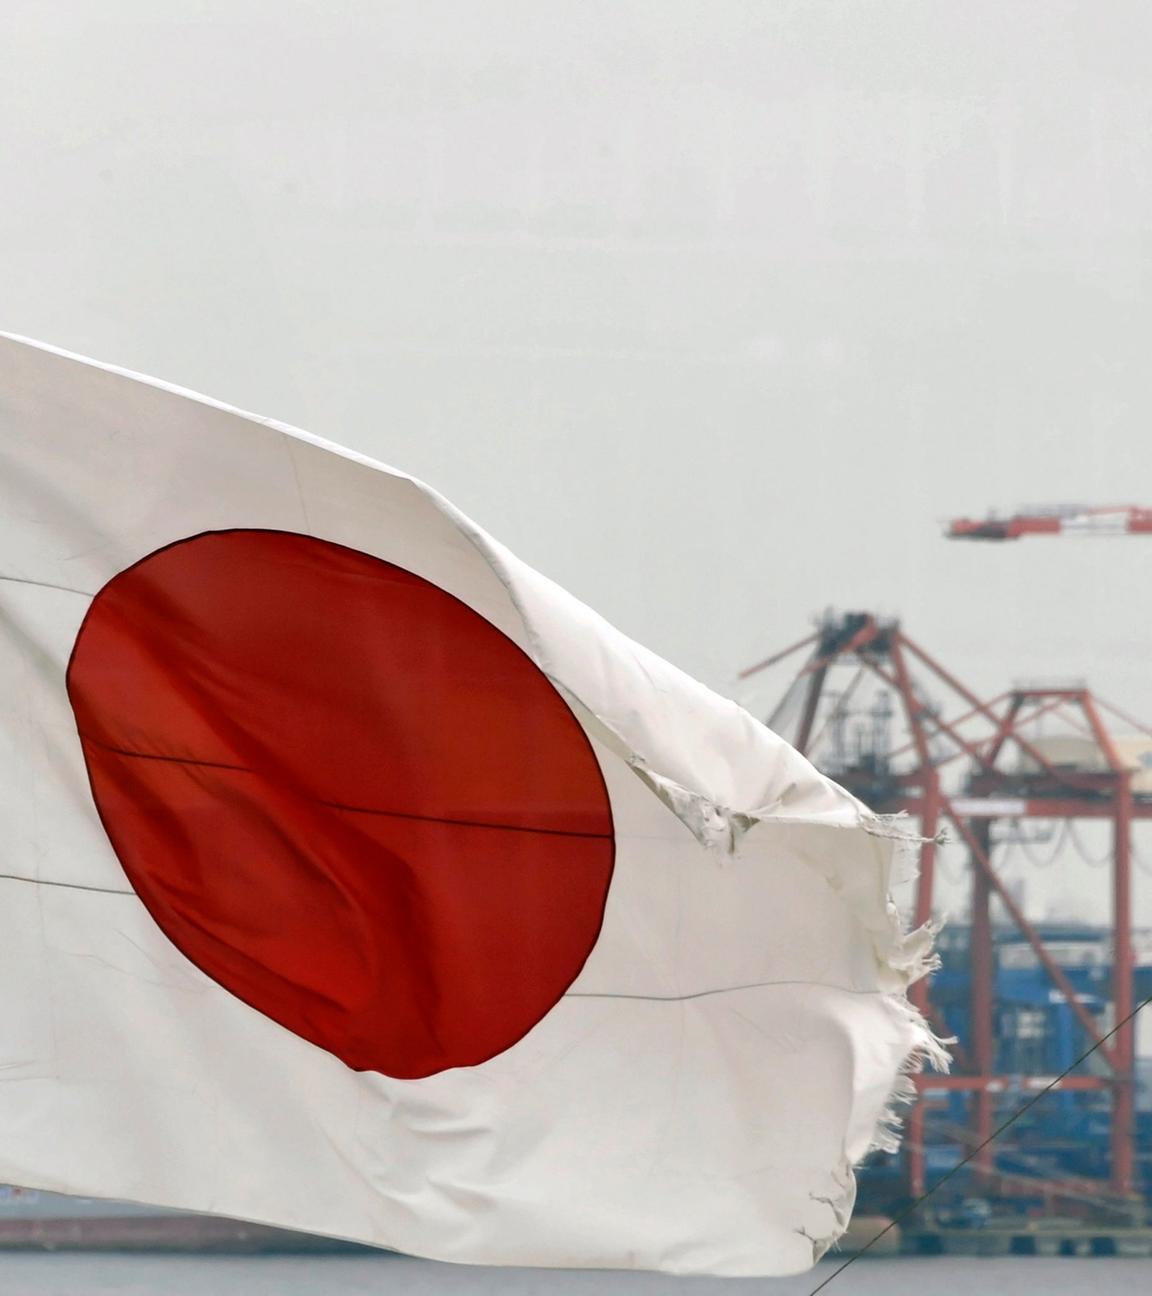 die japanische Flagge weht im Wind, im Hintergrund ist ein großer Hafenkrahn im Hafen Tokios